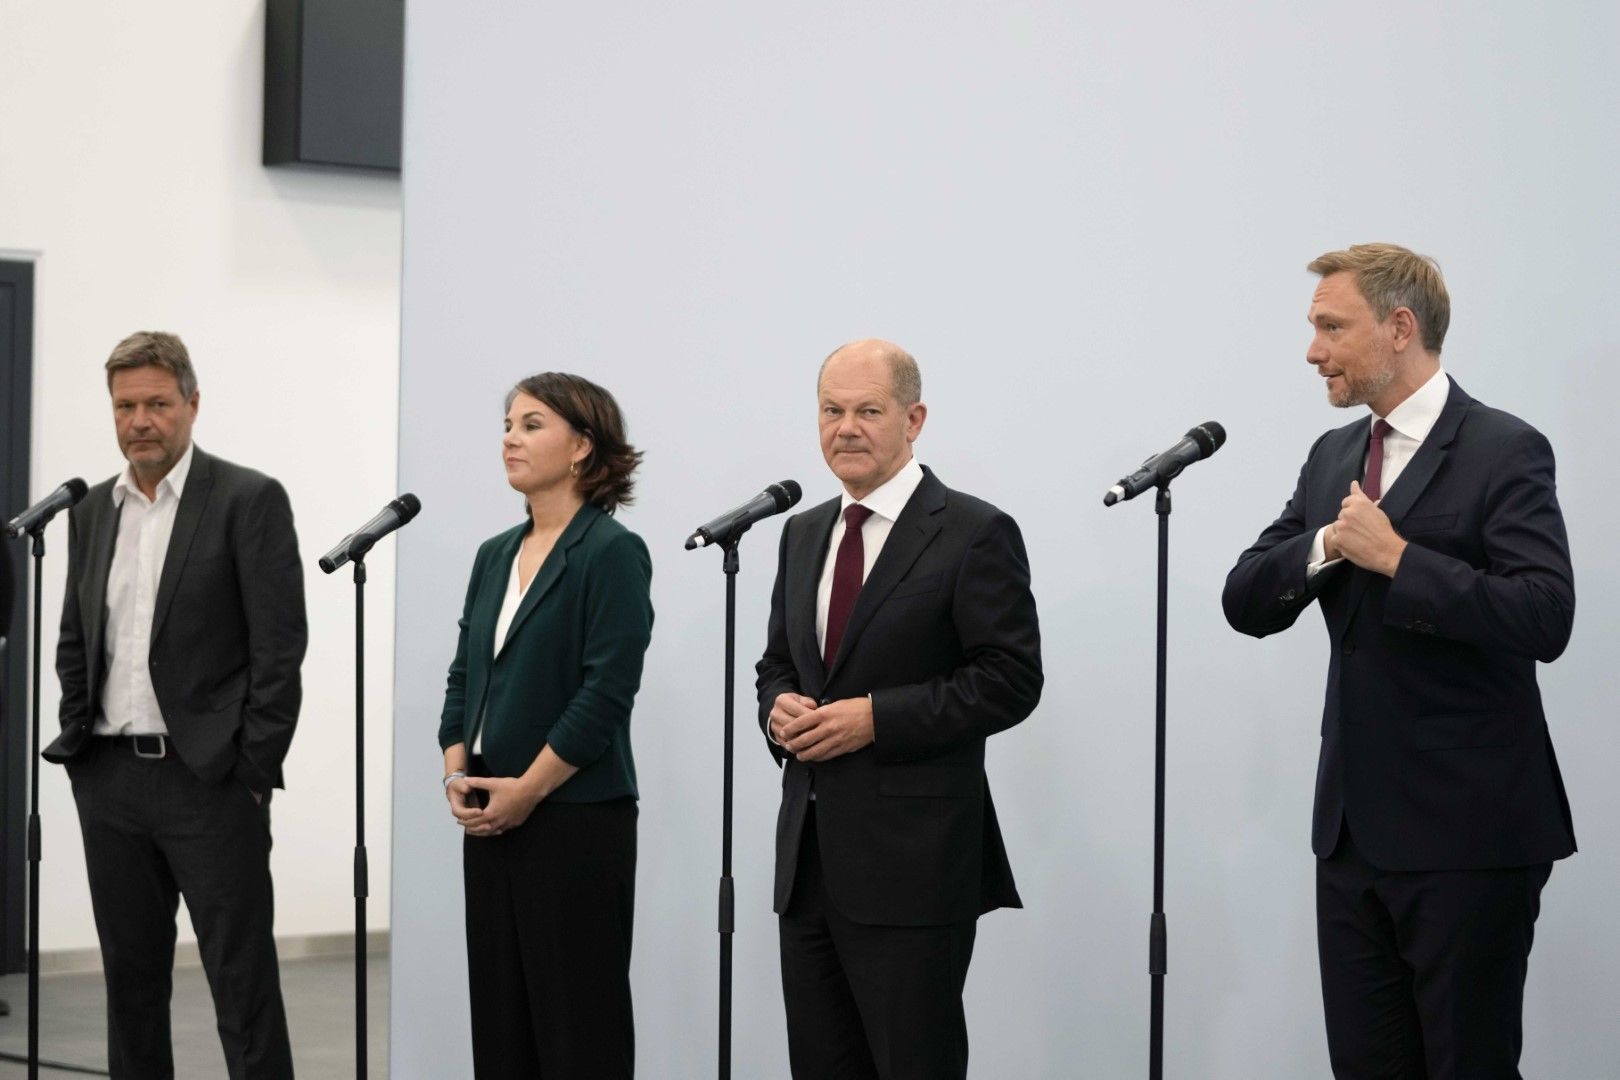 Kандидатът за канцлер Олаф Шолц (ГСДП), втори отдясно, лидерите на Зелената партия Аналена Бербок, втора отляво, и Робърт Хабек, вляво, и председателят на СвДП Кристиан Линднер, вдясно, на съвместна пресконференция в Берлин на 15 октомври 2021 г. 